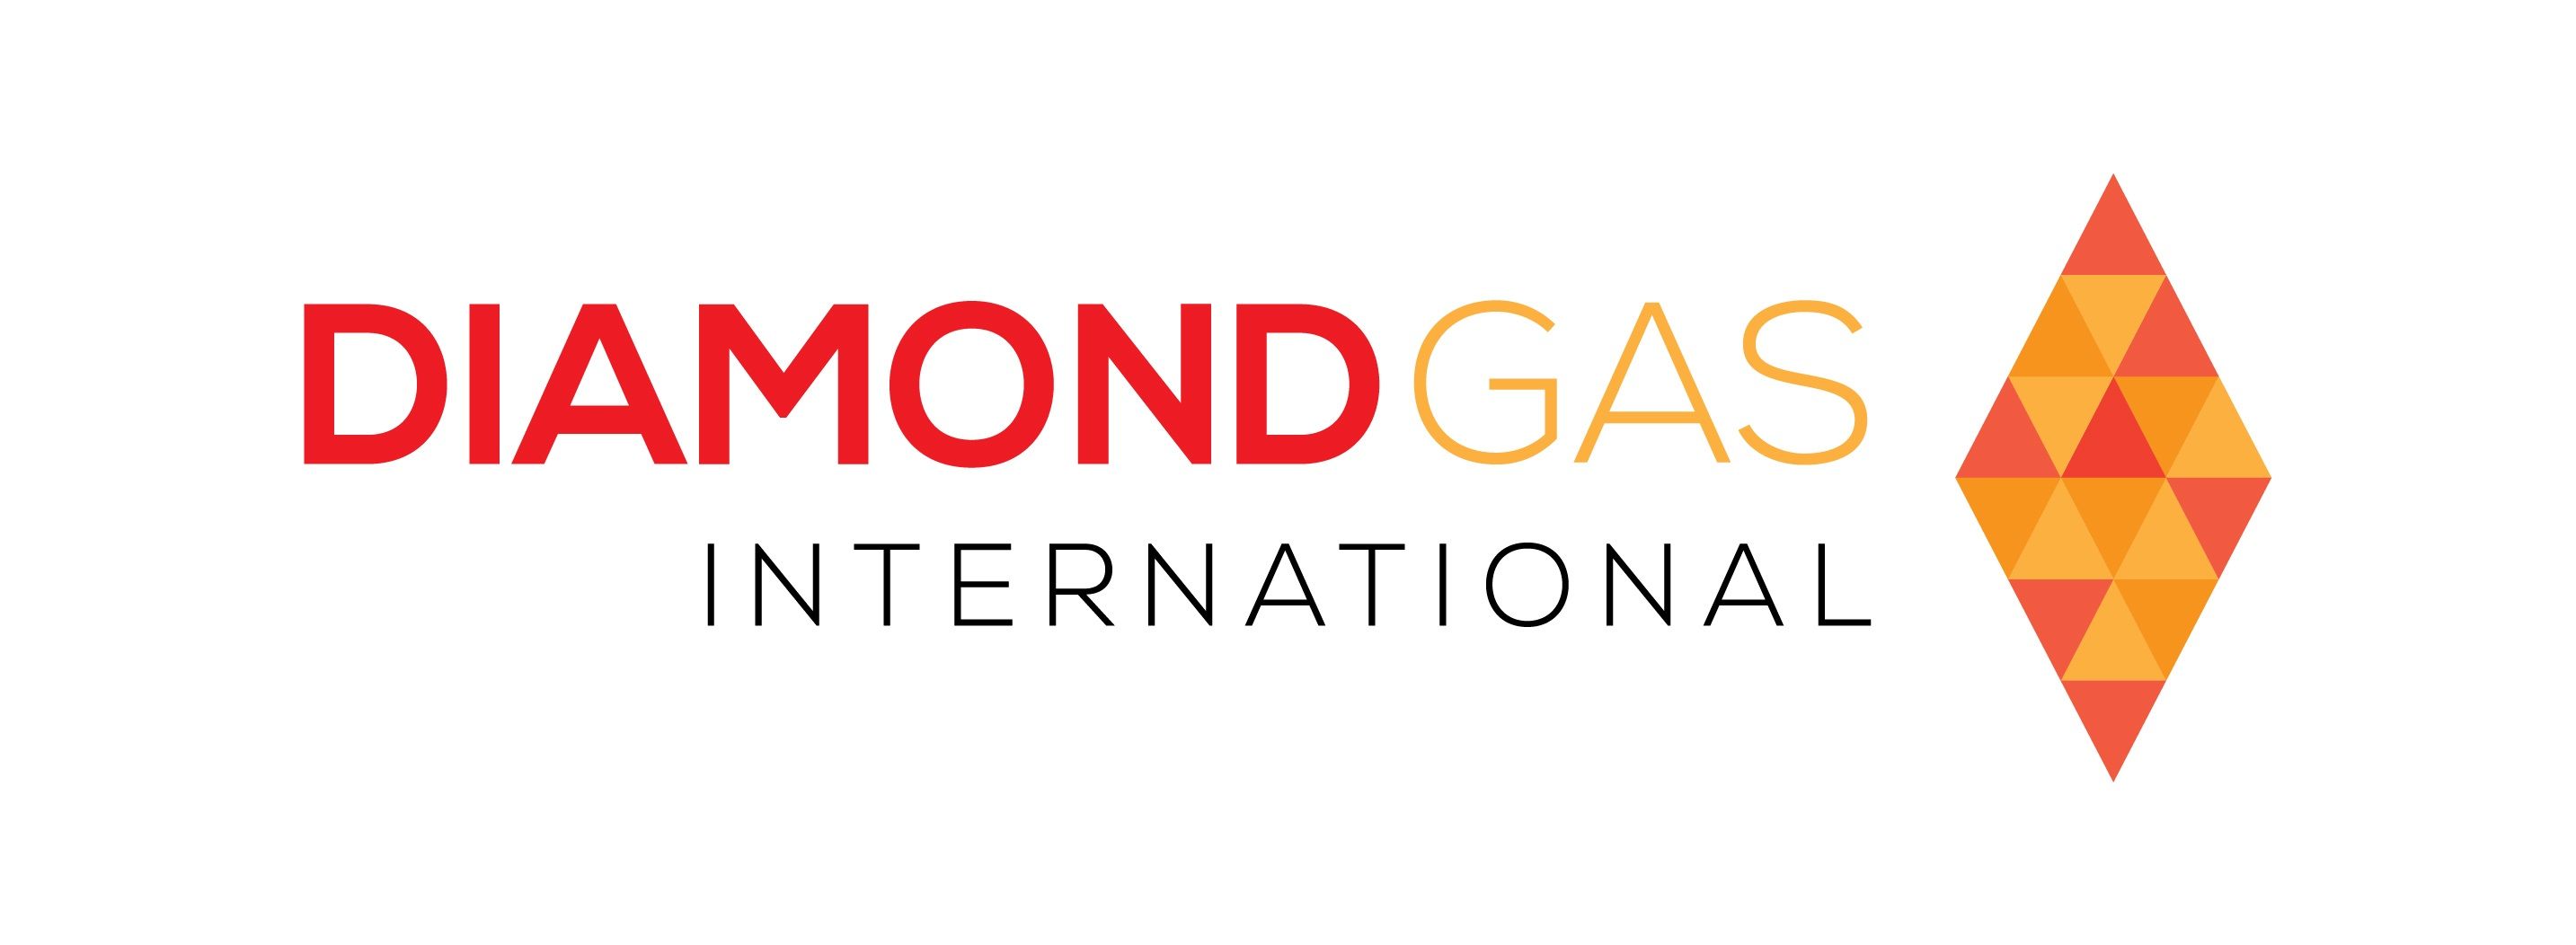 Diamond Gas International (DGI)